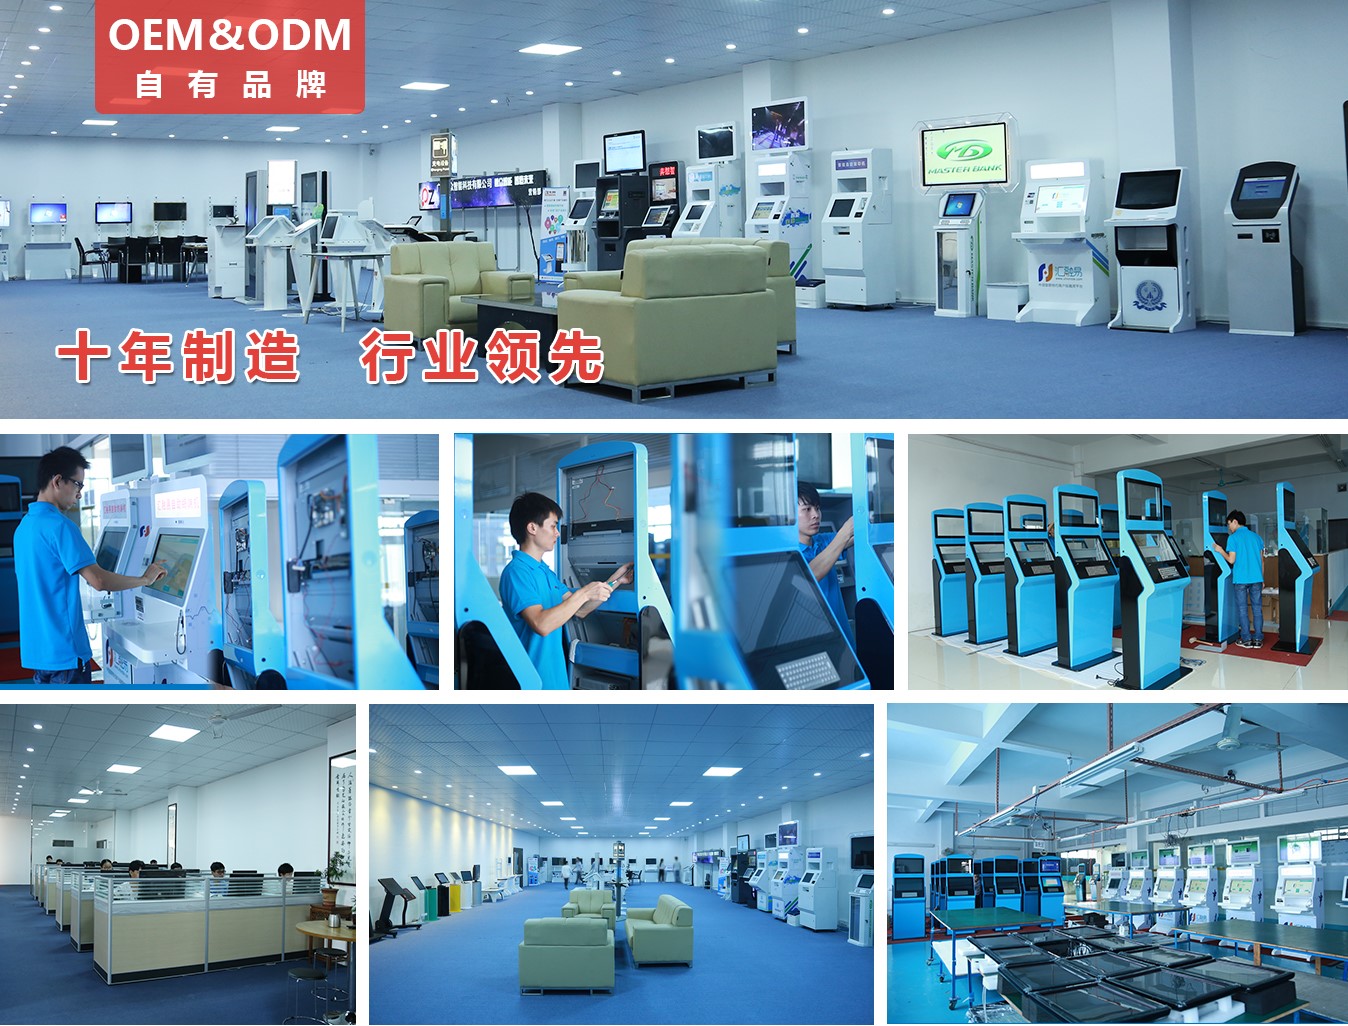 排队叫号机--广州磐众智能科技有限公司